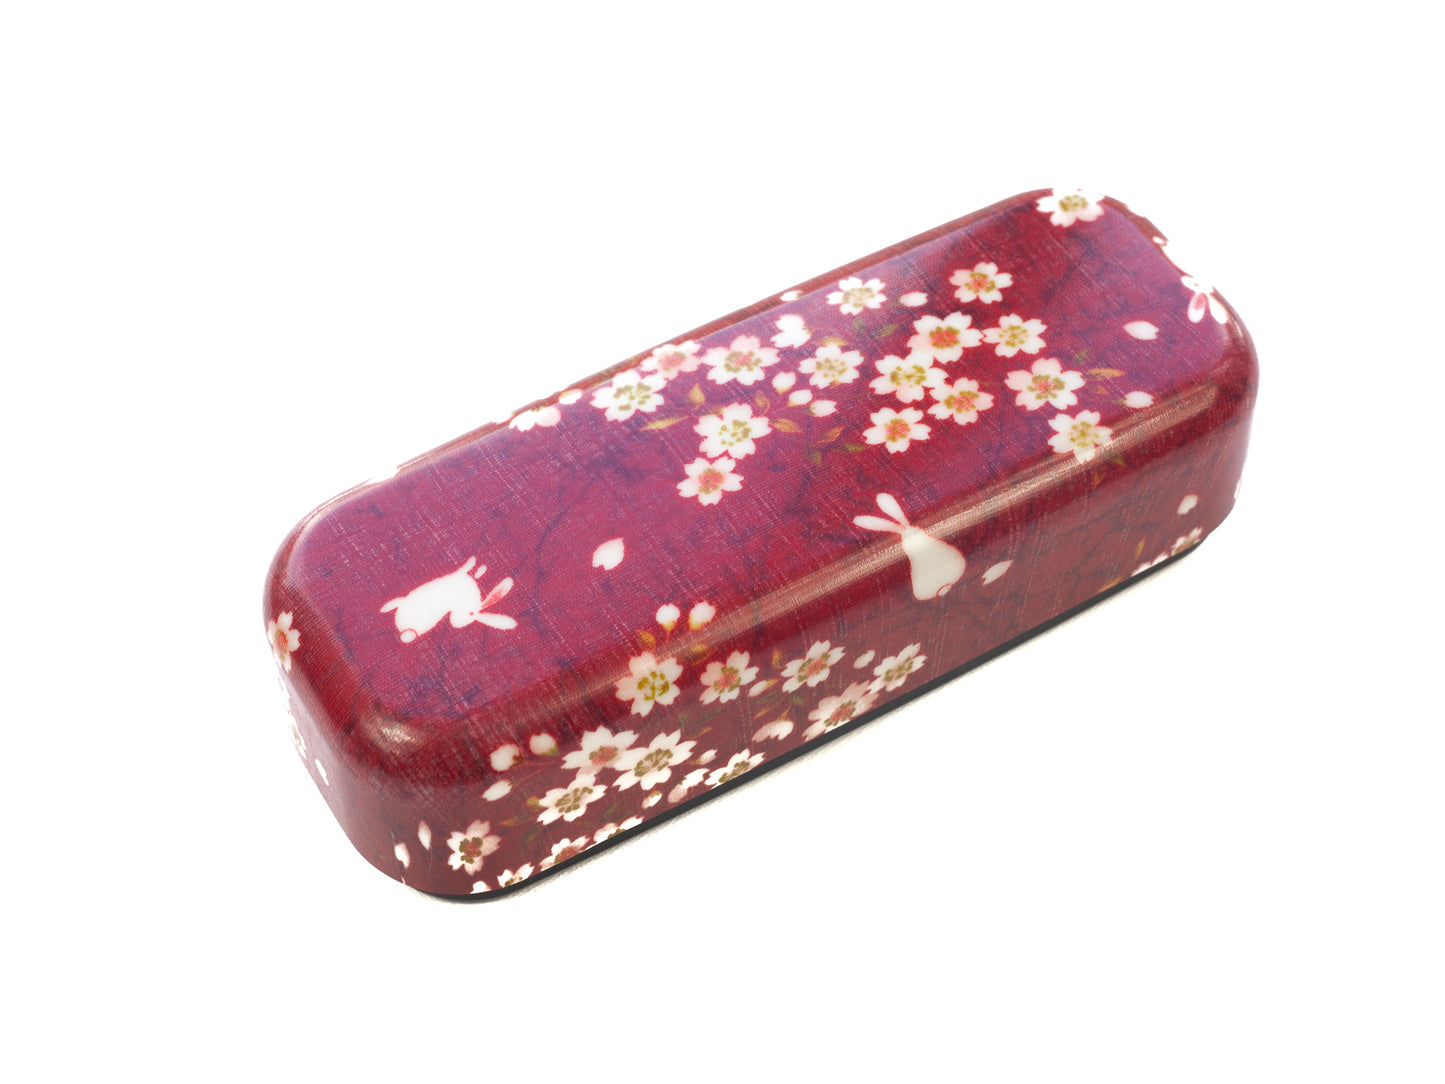 Sakura Rabbit Slim Compact Bento Box (510mL) | Red